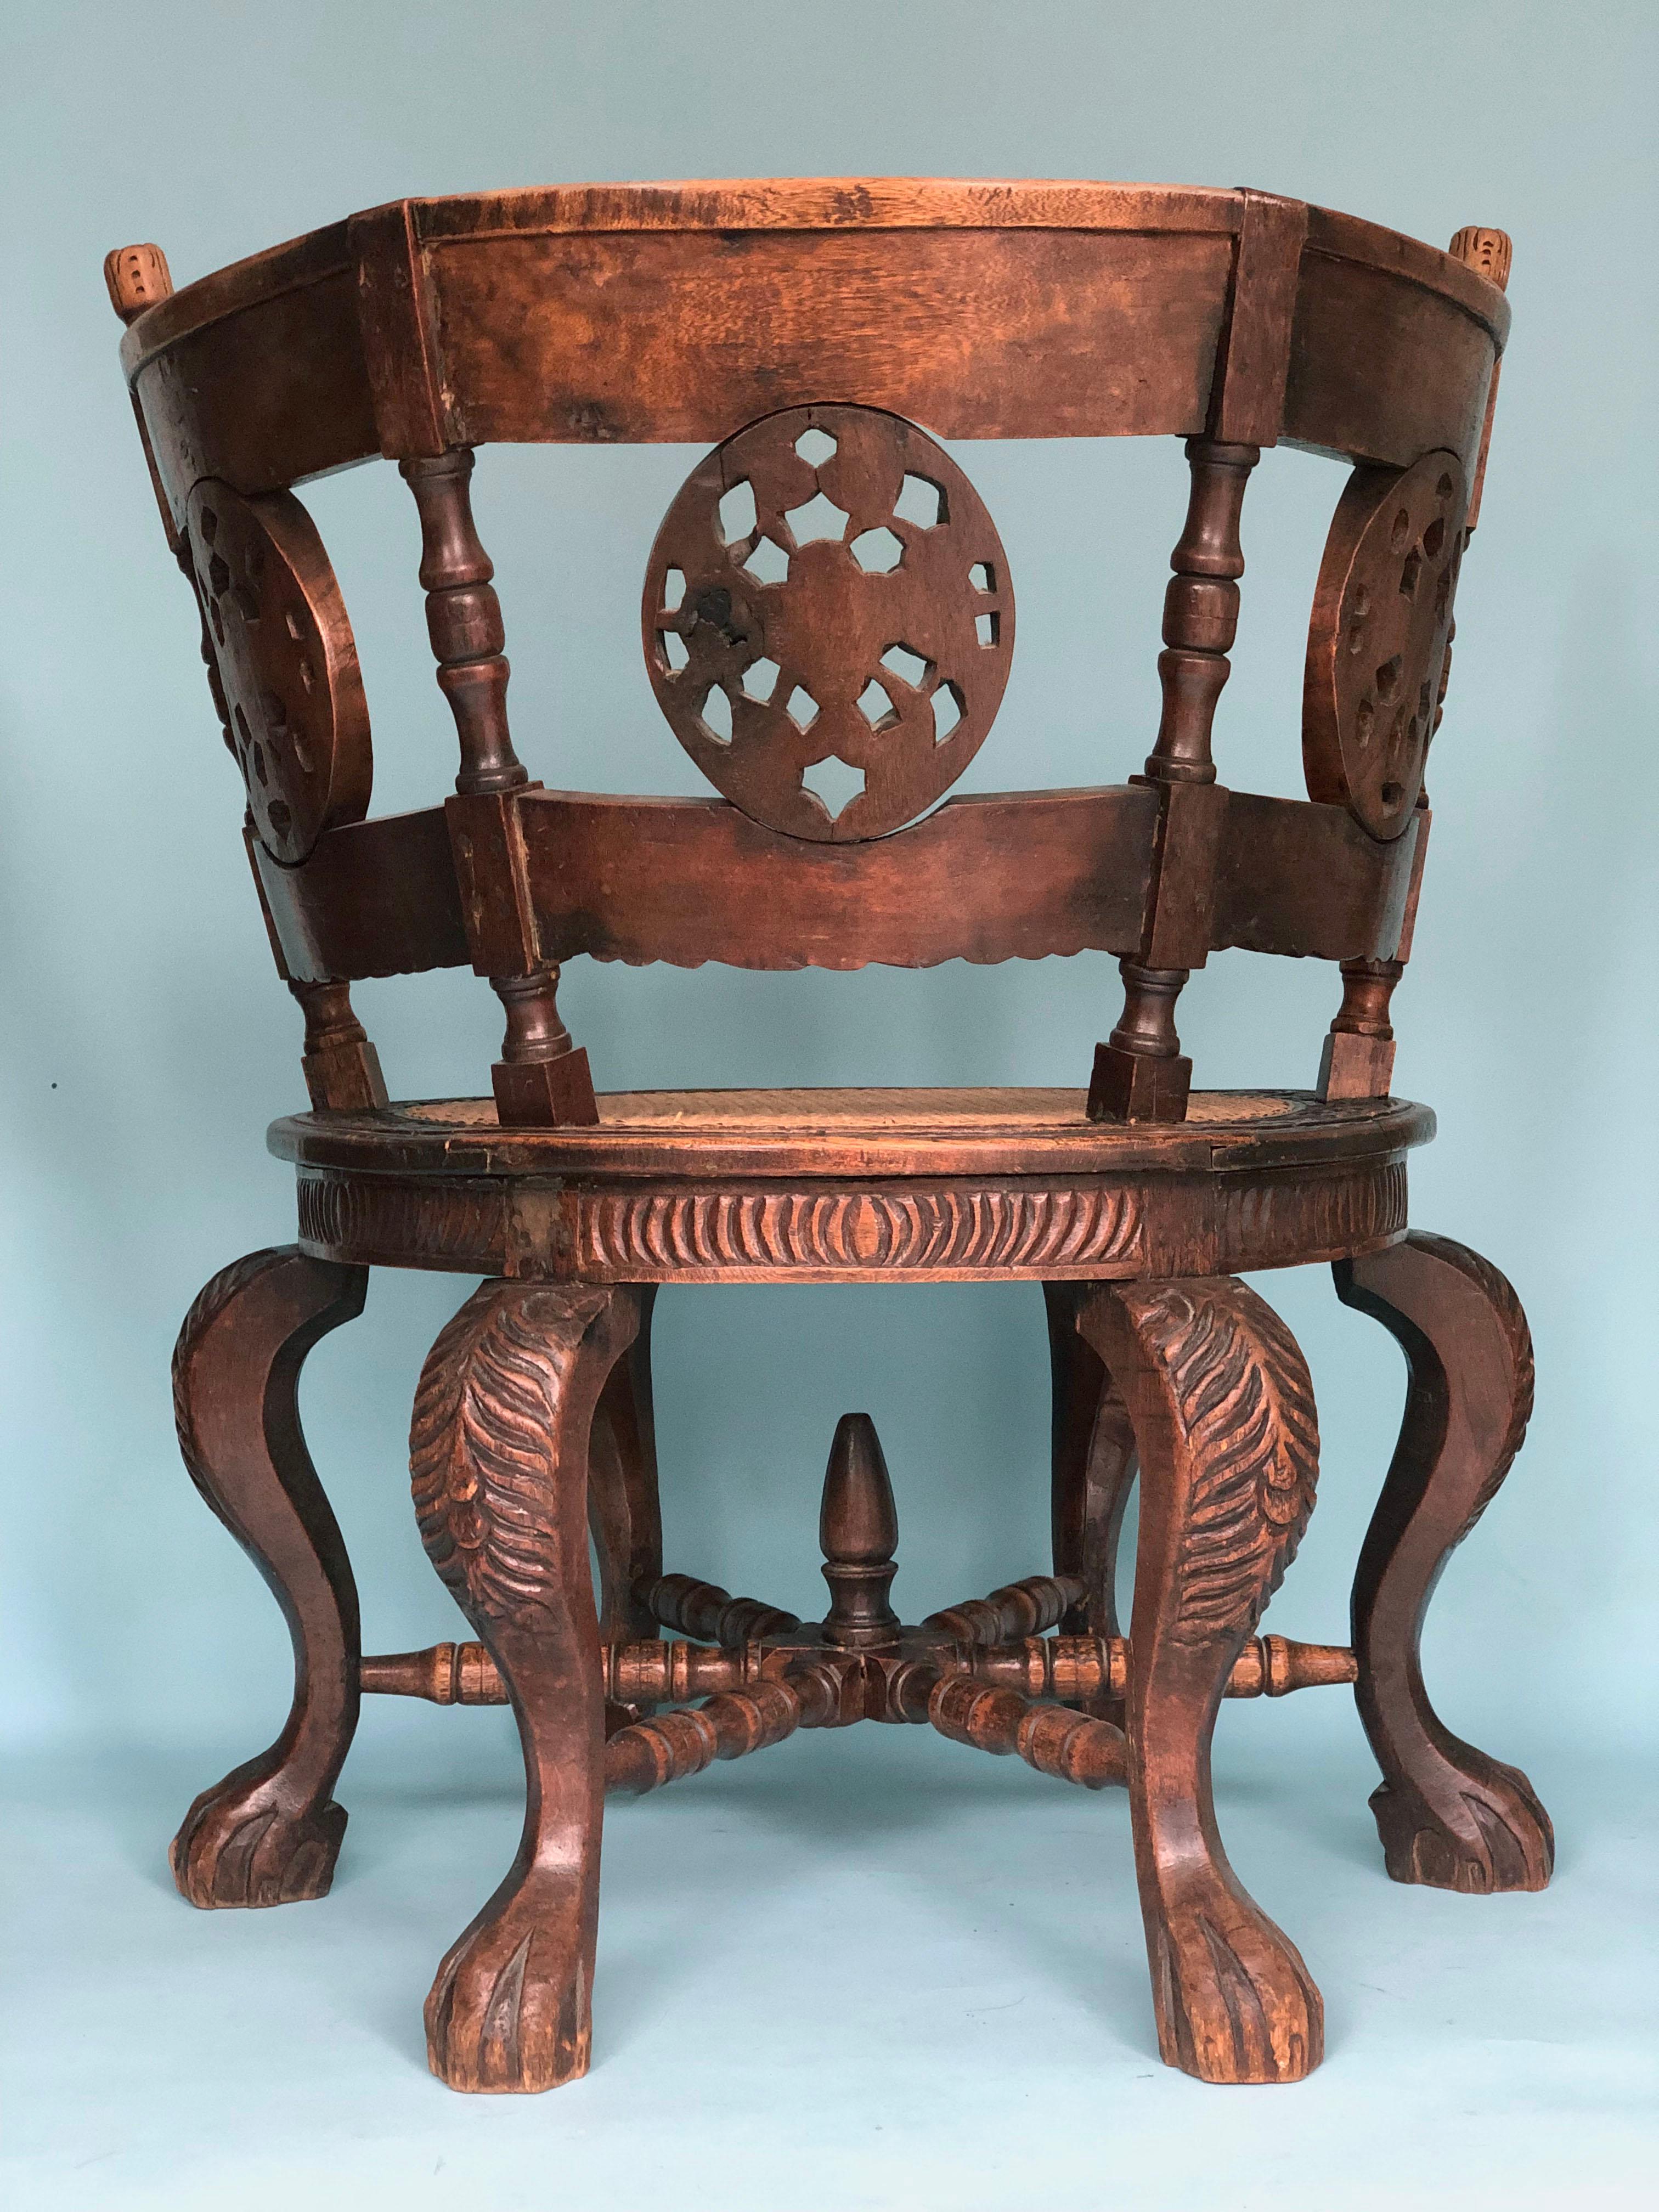 Dieser schöne Burgomaster-Stuhl aus der Kolonialzeit steht auf sechs Cabriole-Beinen mit Löwenpfotenfüßen und hat eine halbkreisförmige Rückenlehne, die mit geschnitzten Medaillons und Blumen verziert ist. Diese Art von Möbeln wurde im späten 17.